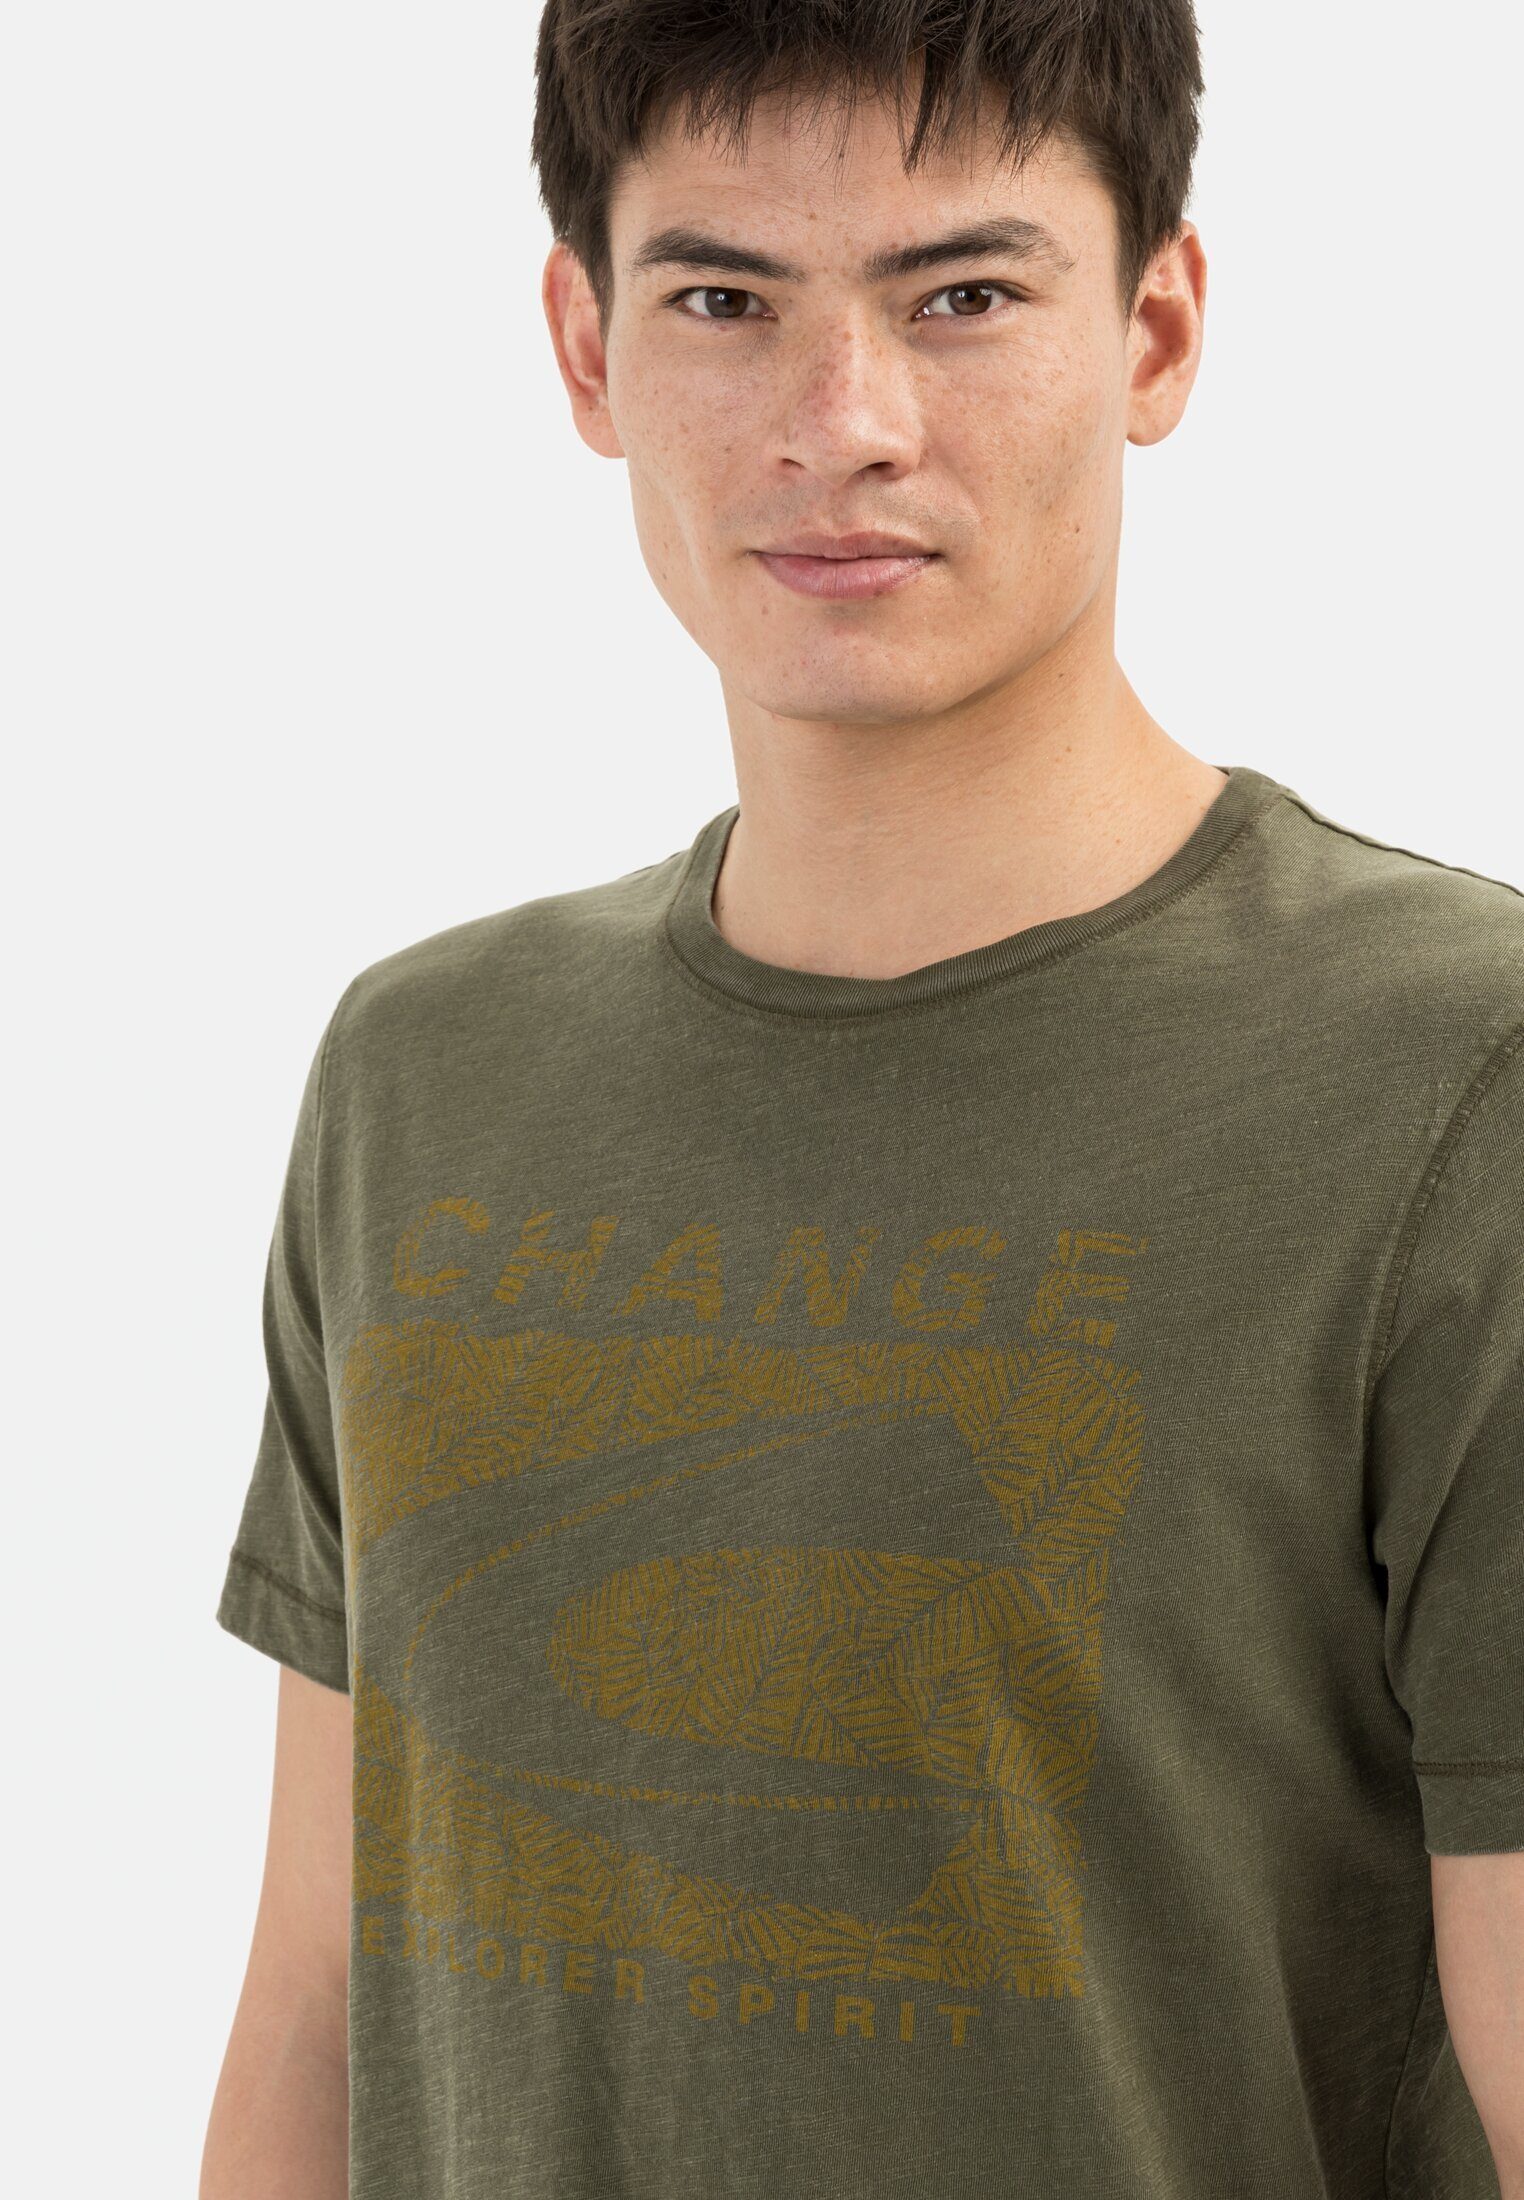 Herren Shirts camel active Print-Shirt Kurzarm T-Shirt aus Organic Cotton